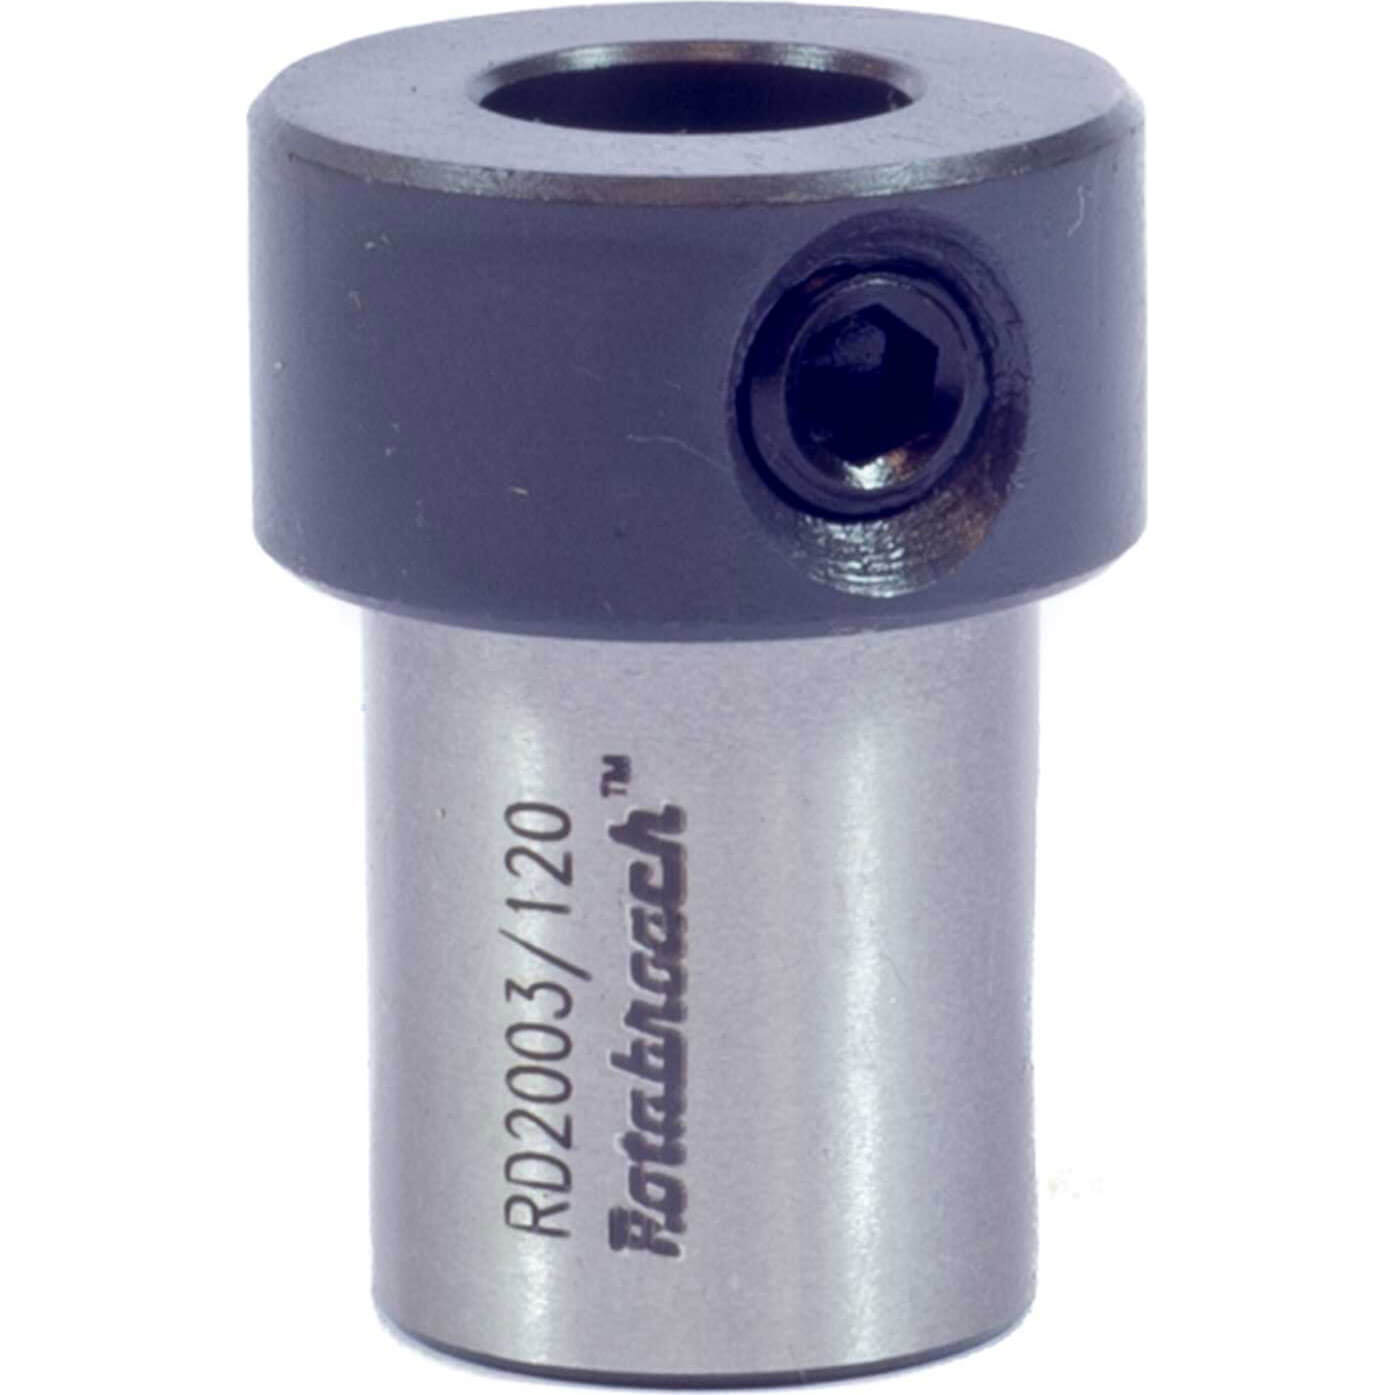 Photos - Drill Bit Rotabroach Mag Drill Twist Drill Adaptor 12mm RD2003/120 